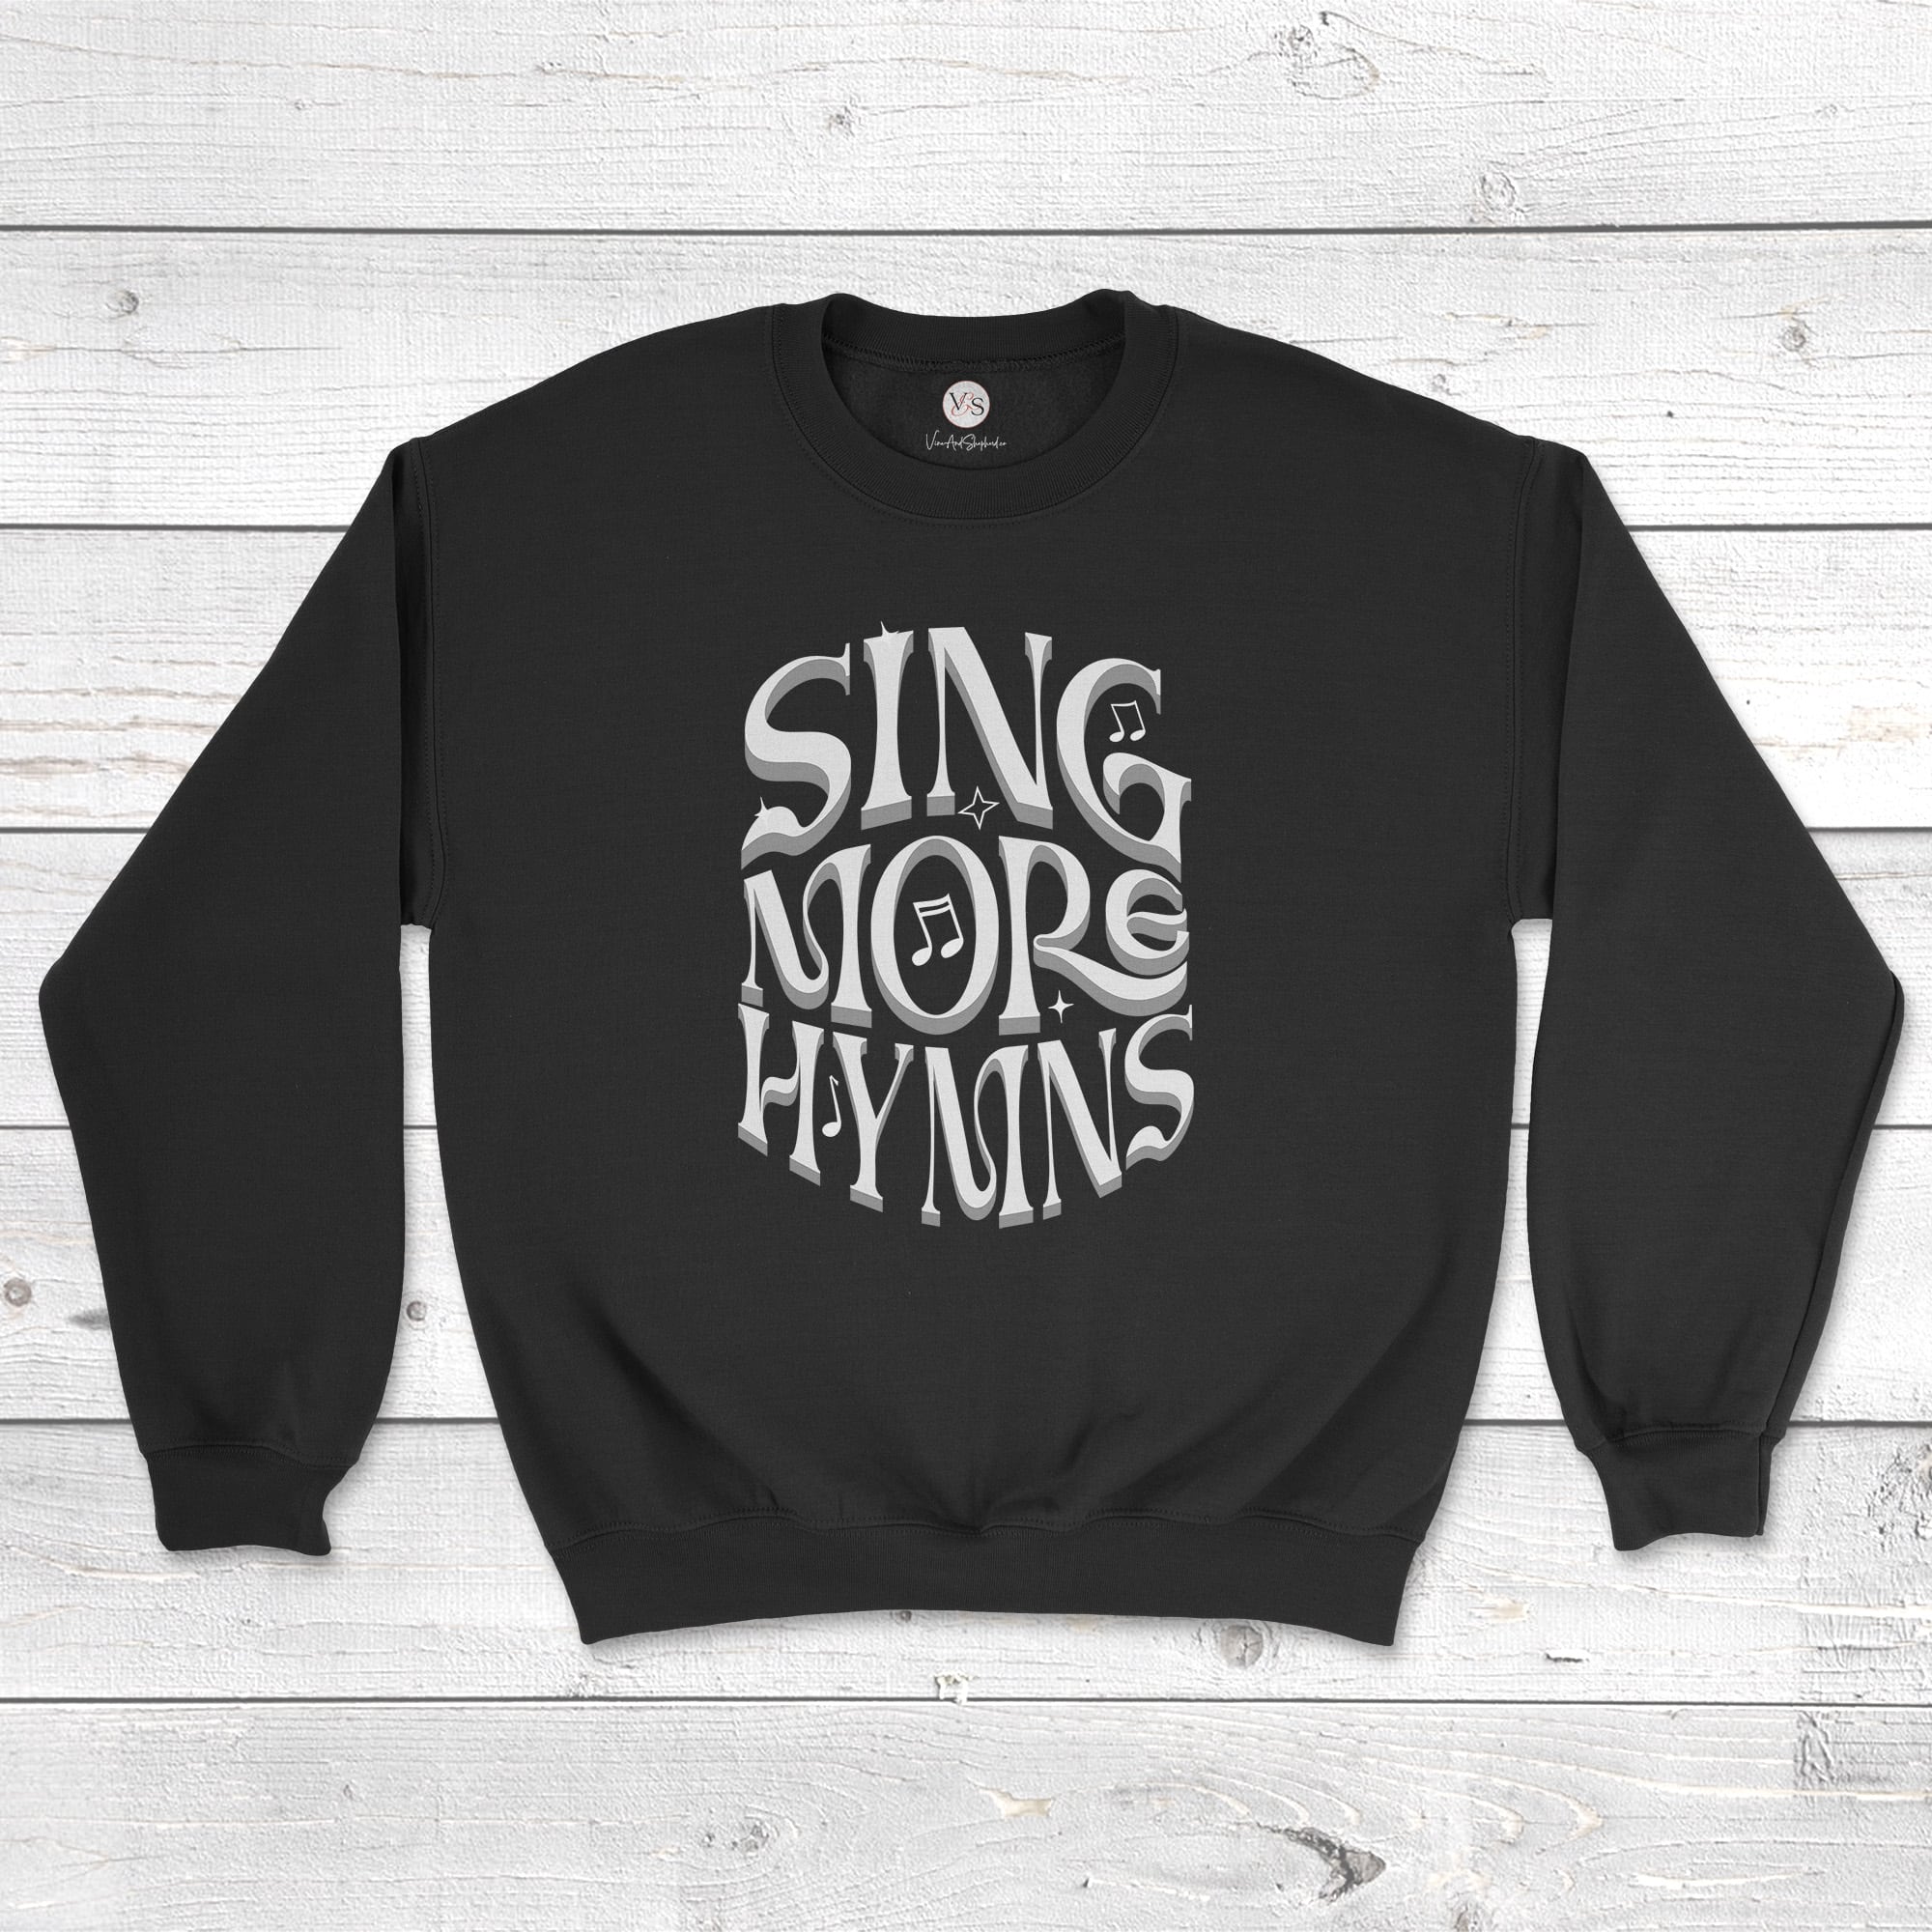 Sing More Hymns sweatshirt in black